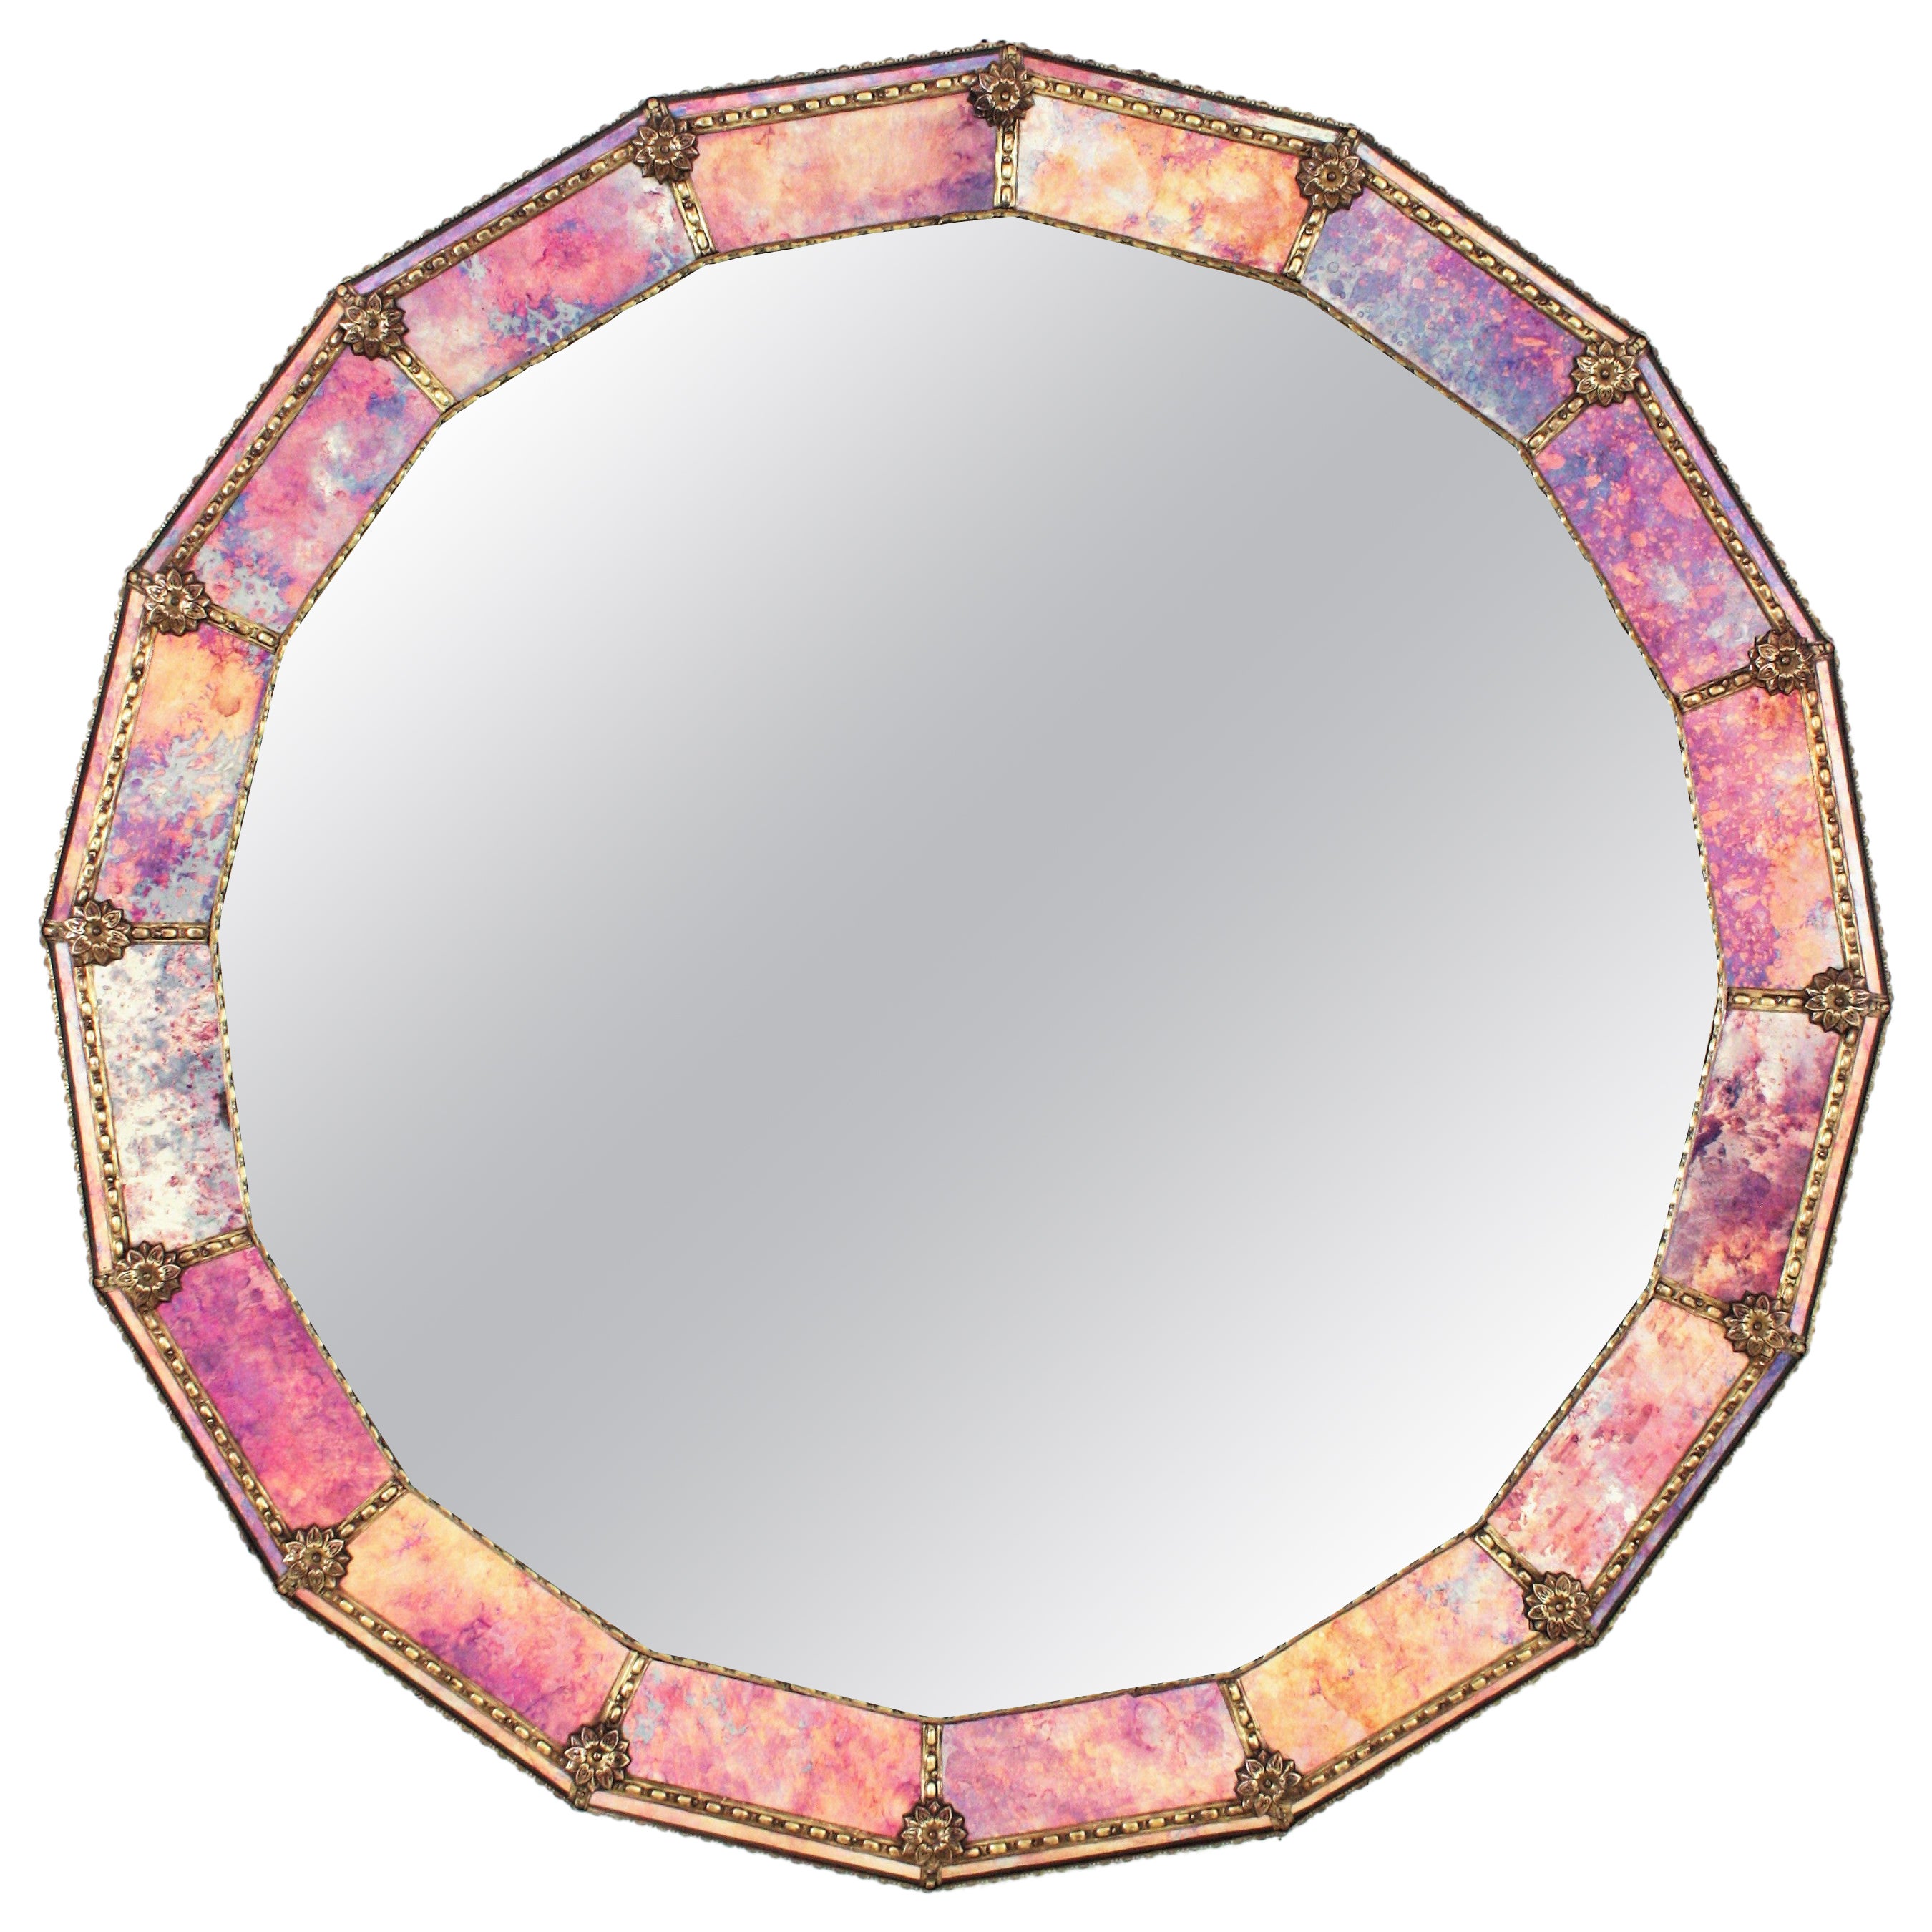 Runder Spiegel im venezianischen Stil mit violettem Glas und Messingrahmen